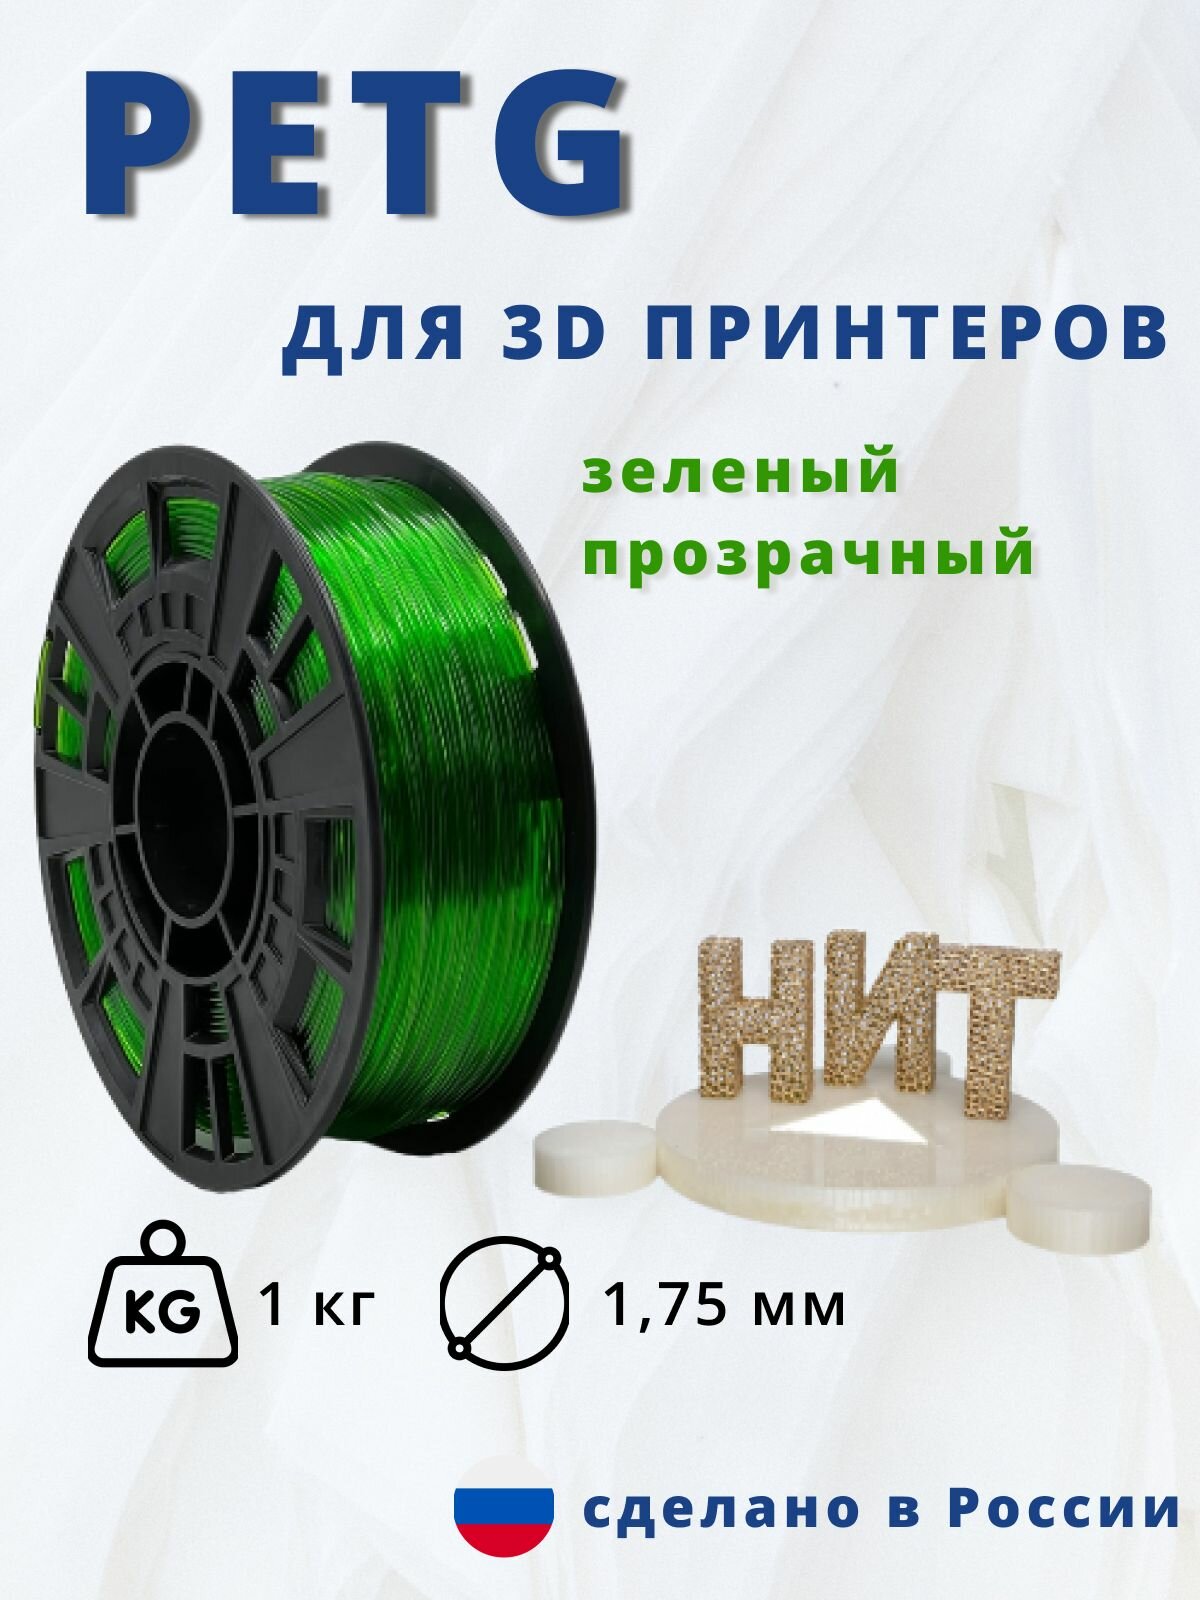 Пластик для 3D печати "НИТ", Petg зелёный прозрачный 1 кг.